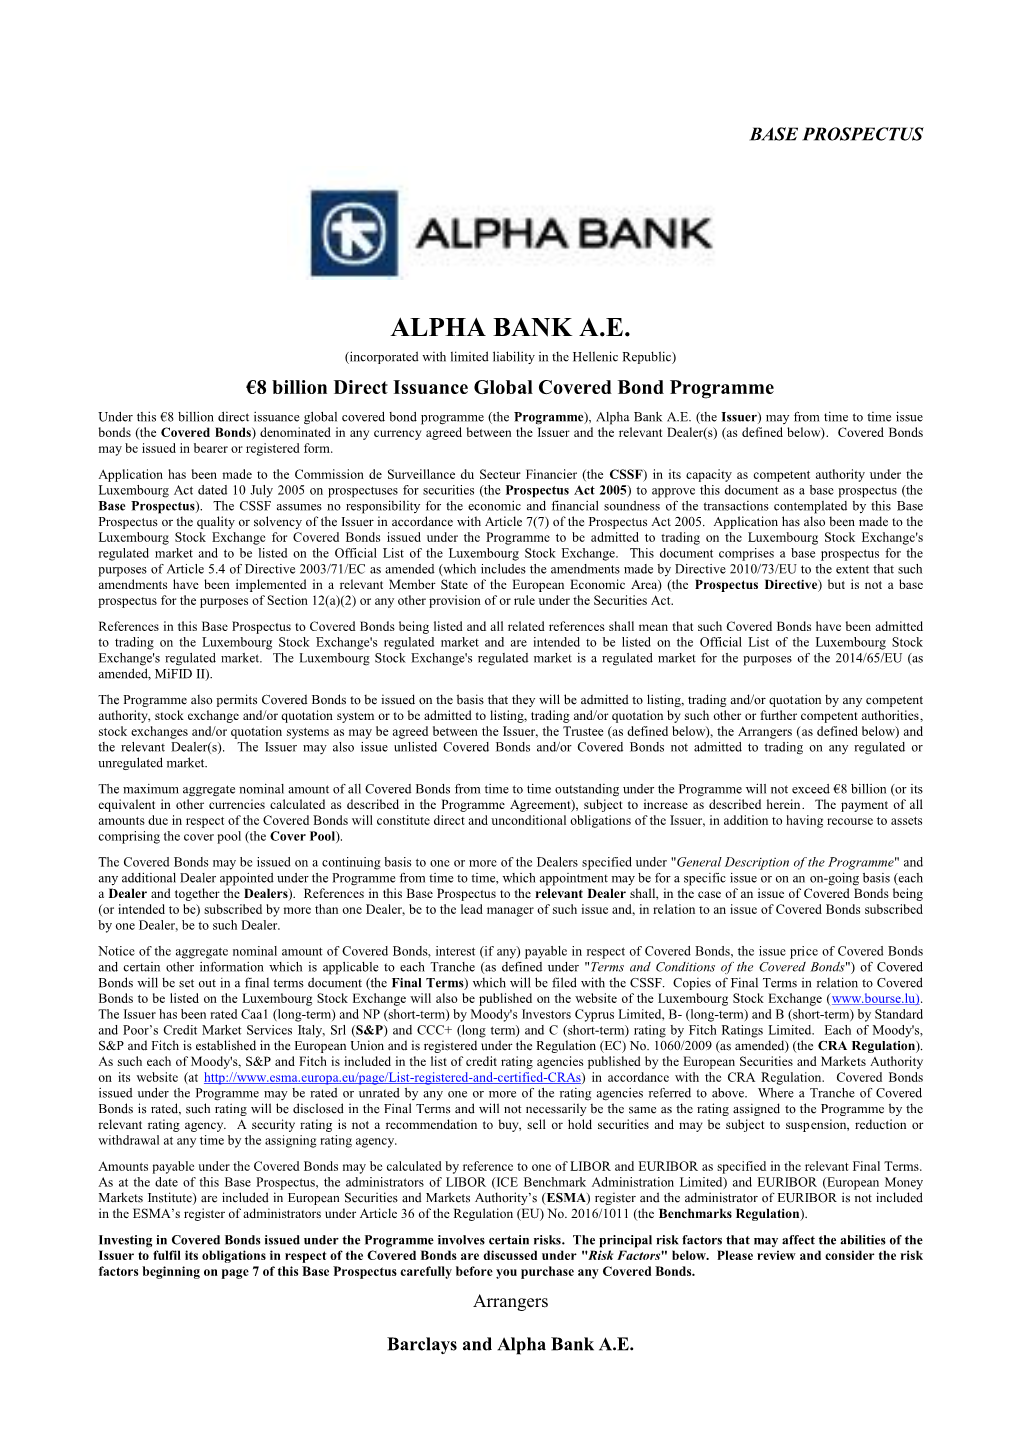 Alpha Bank A.E